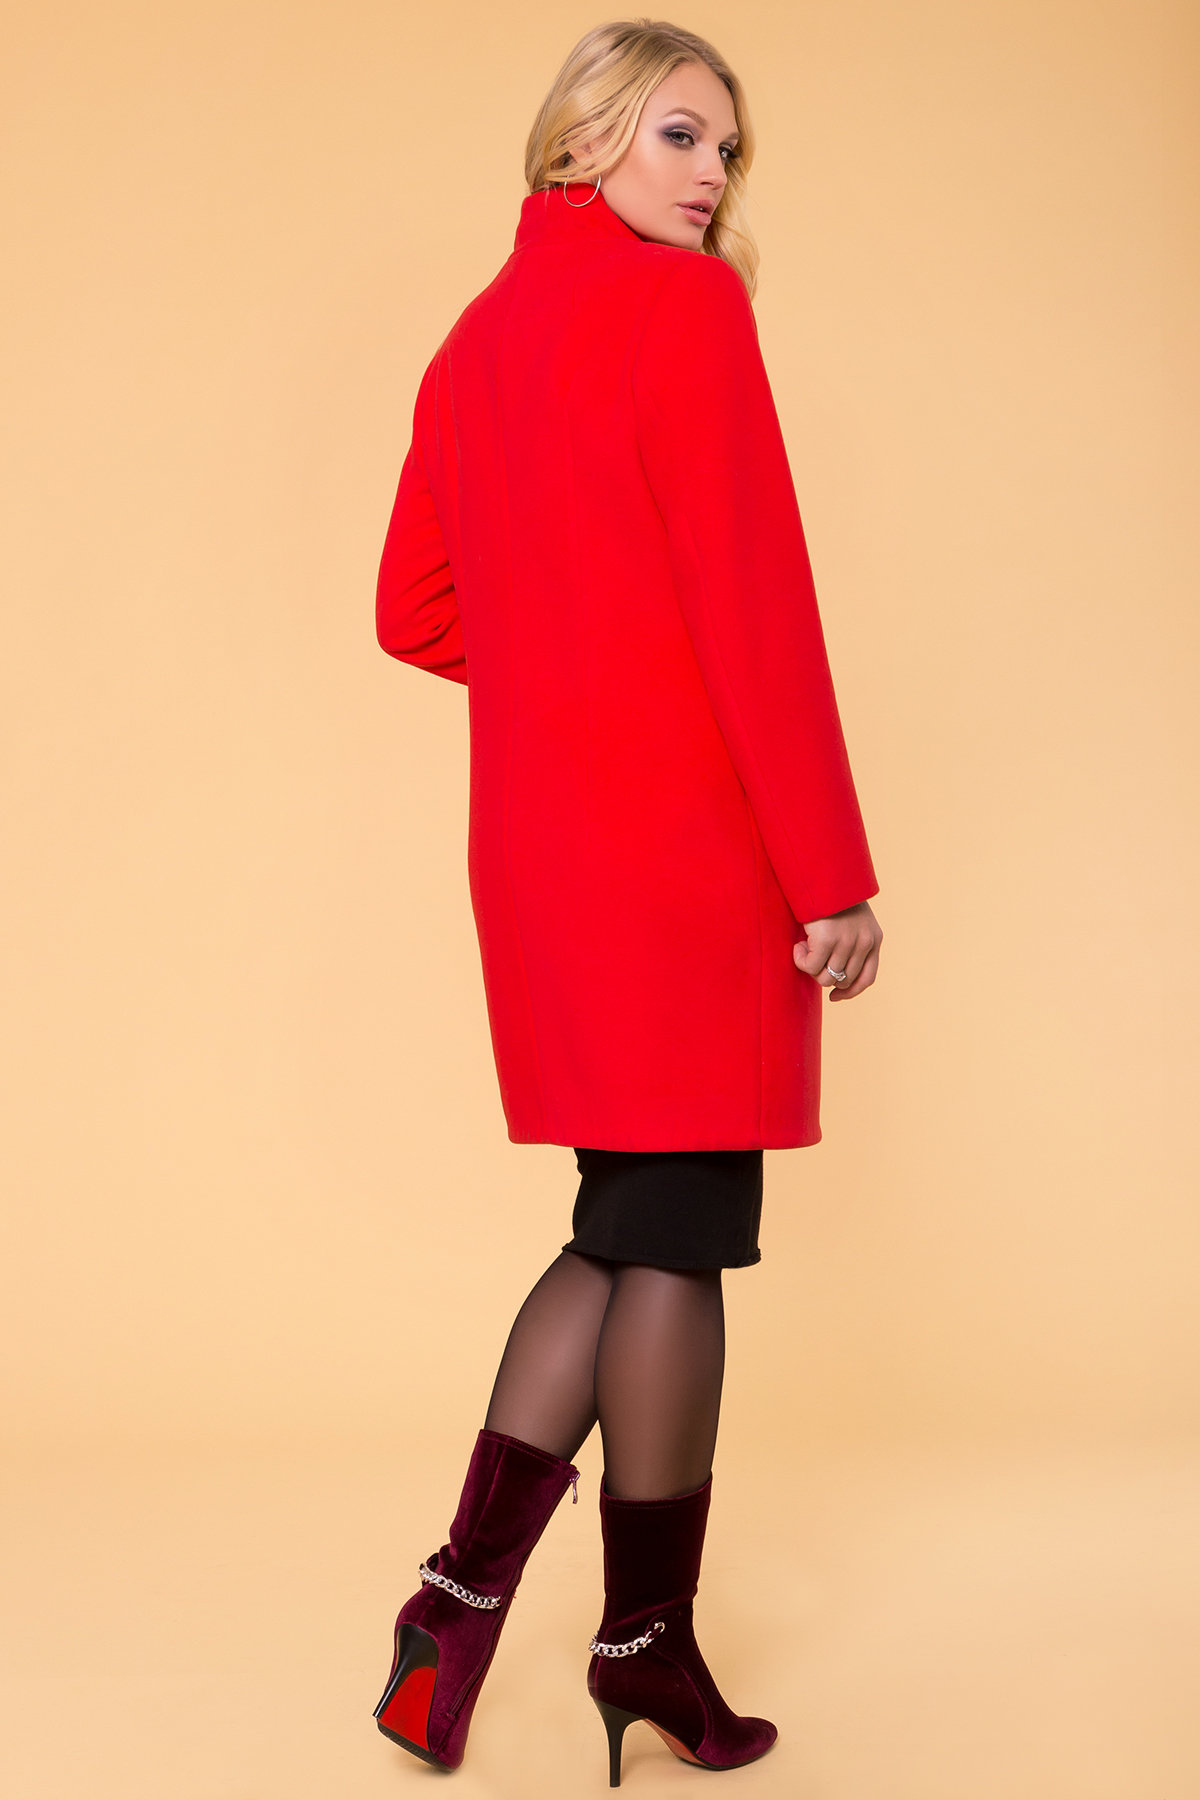 Красное демисезонное пальто Эльпассо 1 Donna 1096 АРТ. 38272 Цвет: Красный B-020 - фото 2, интернет магазин tm-modus.ru